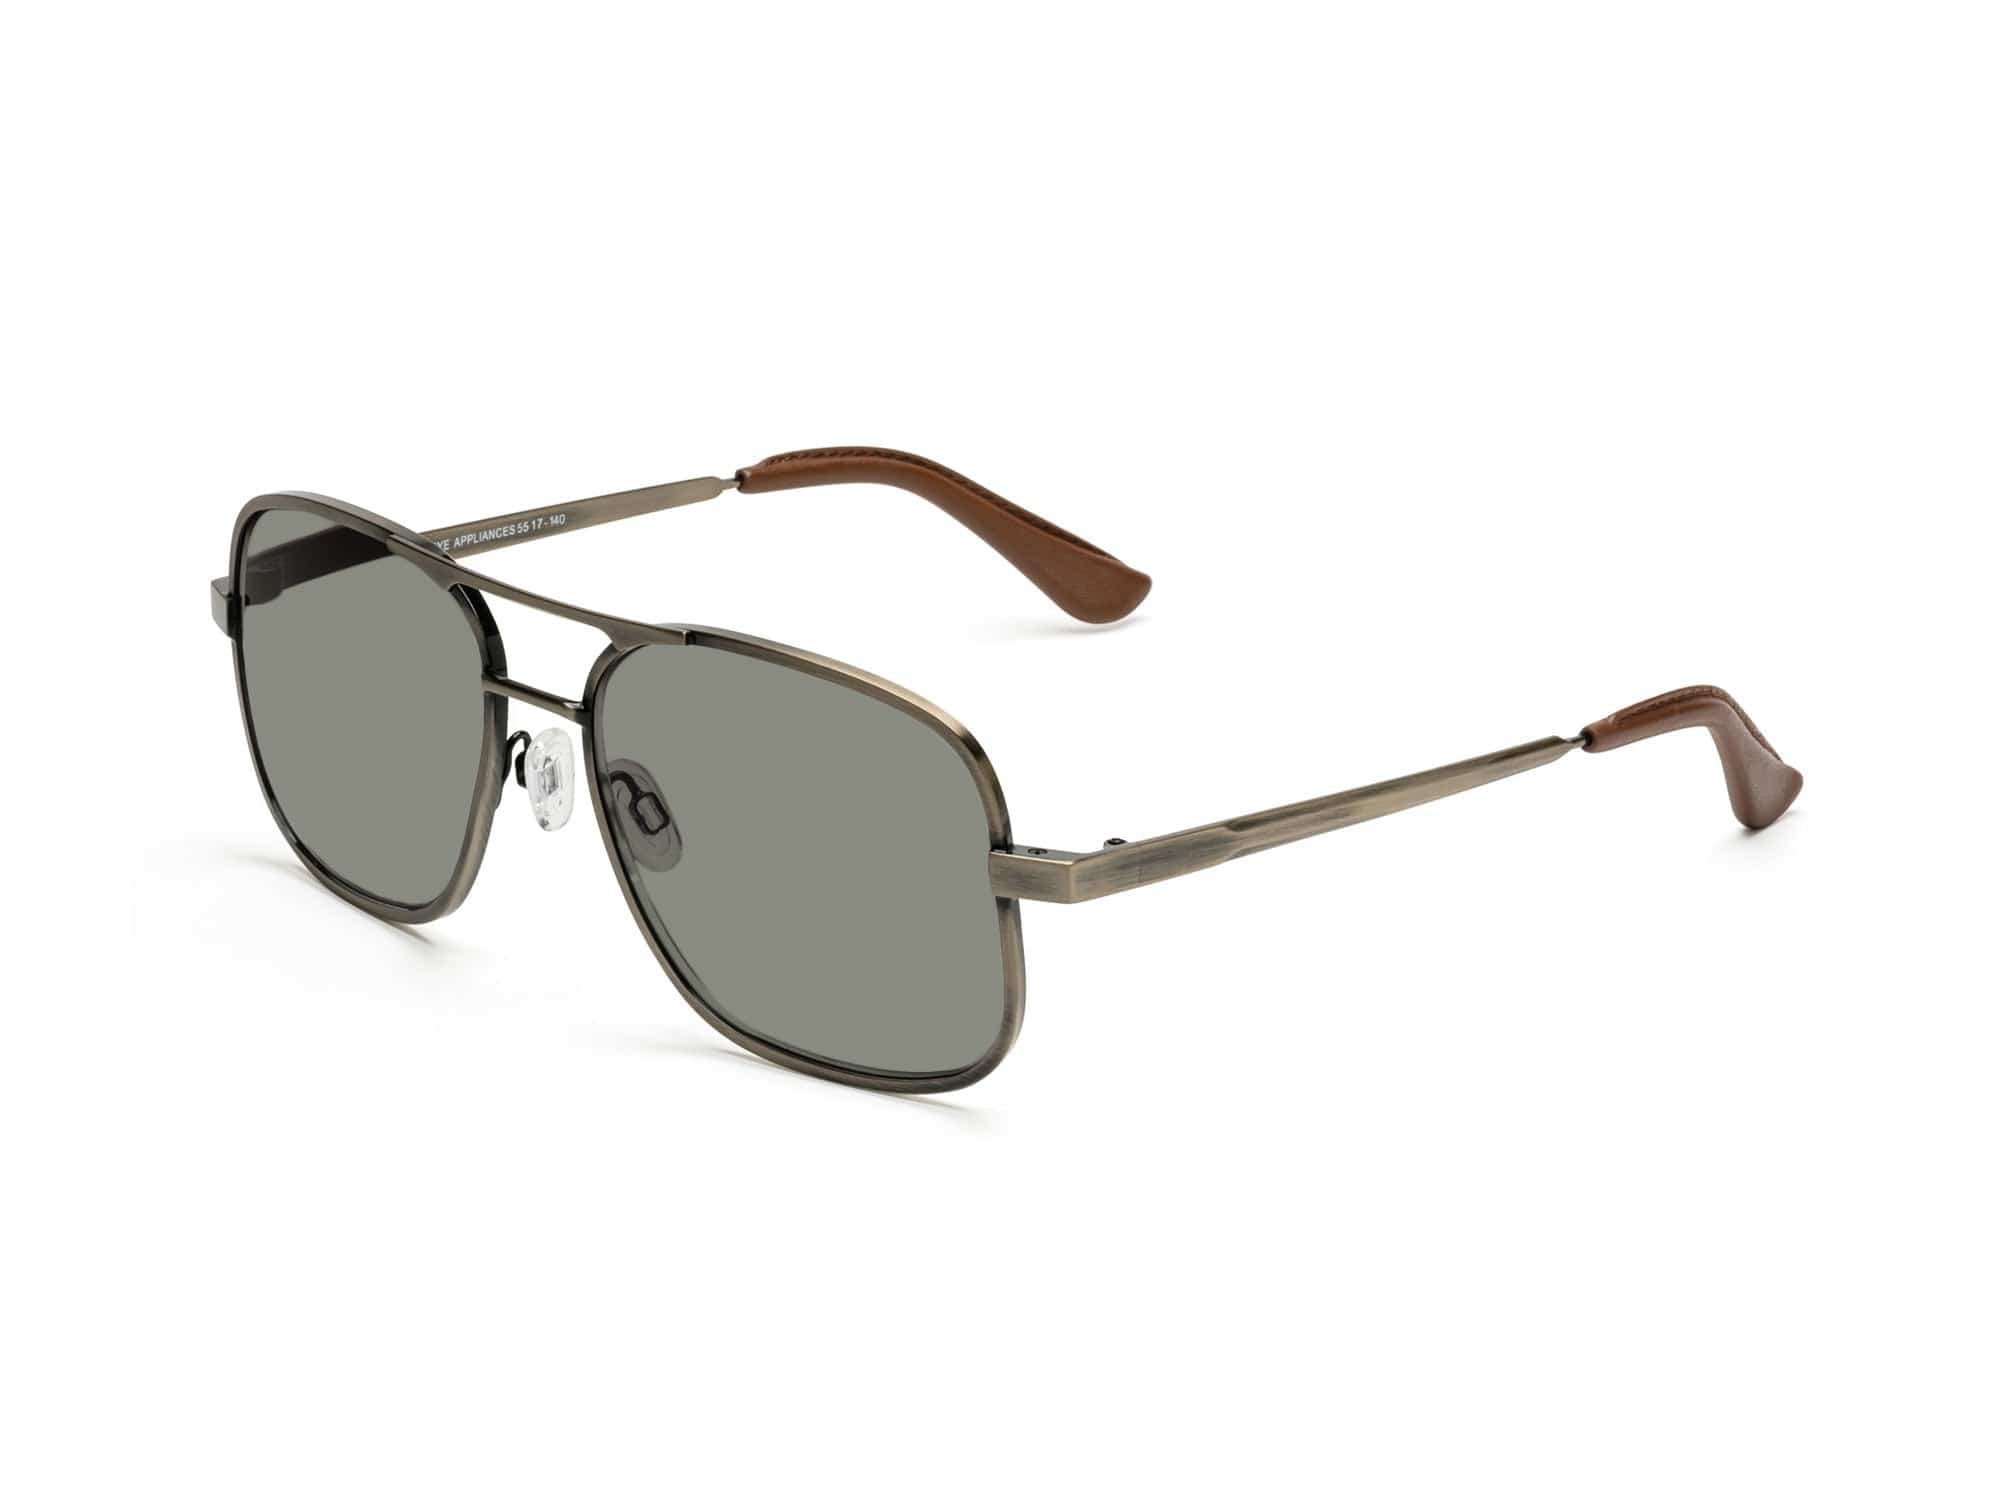 Gwyneth Paltrow Caddis aviator sunglasses